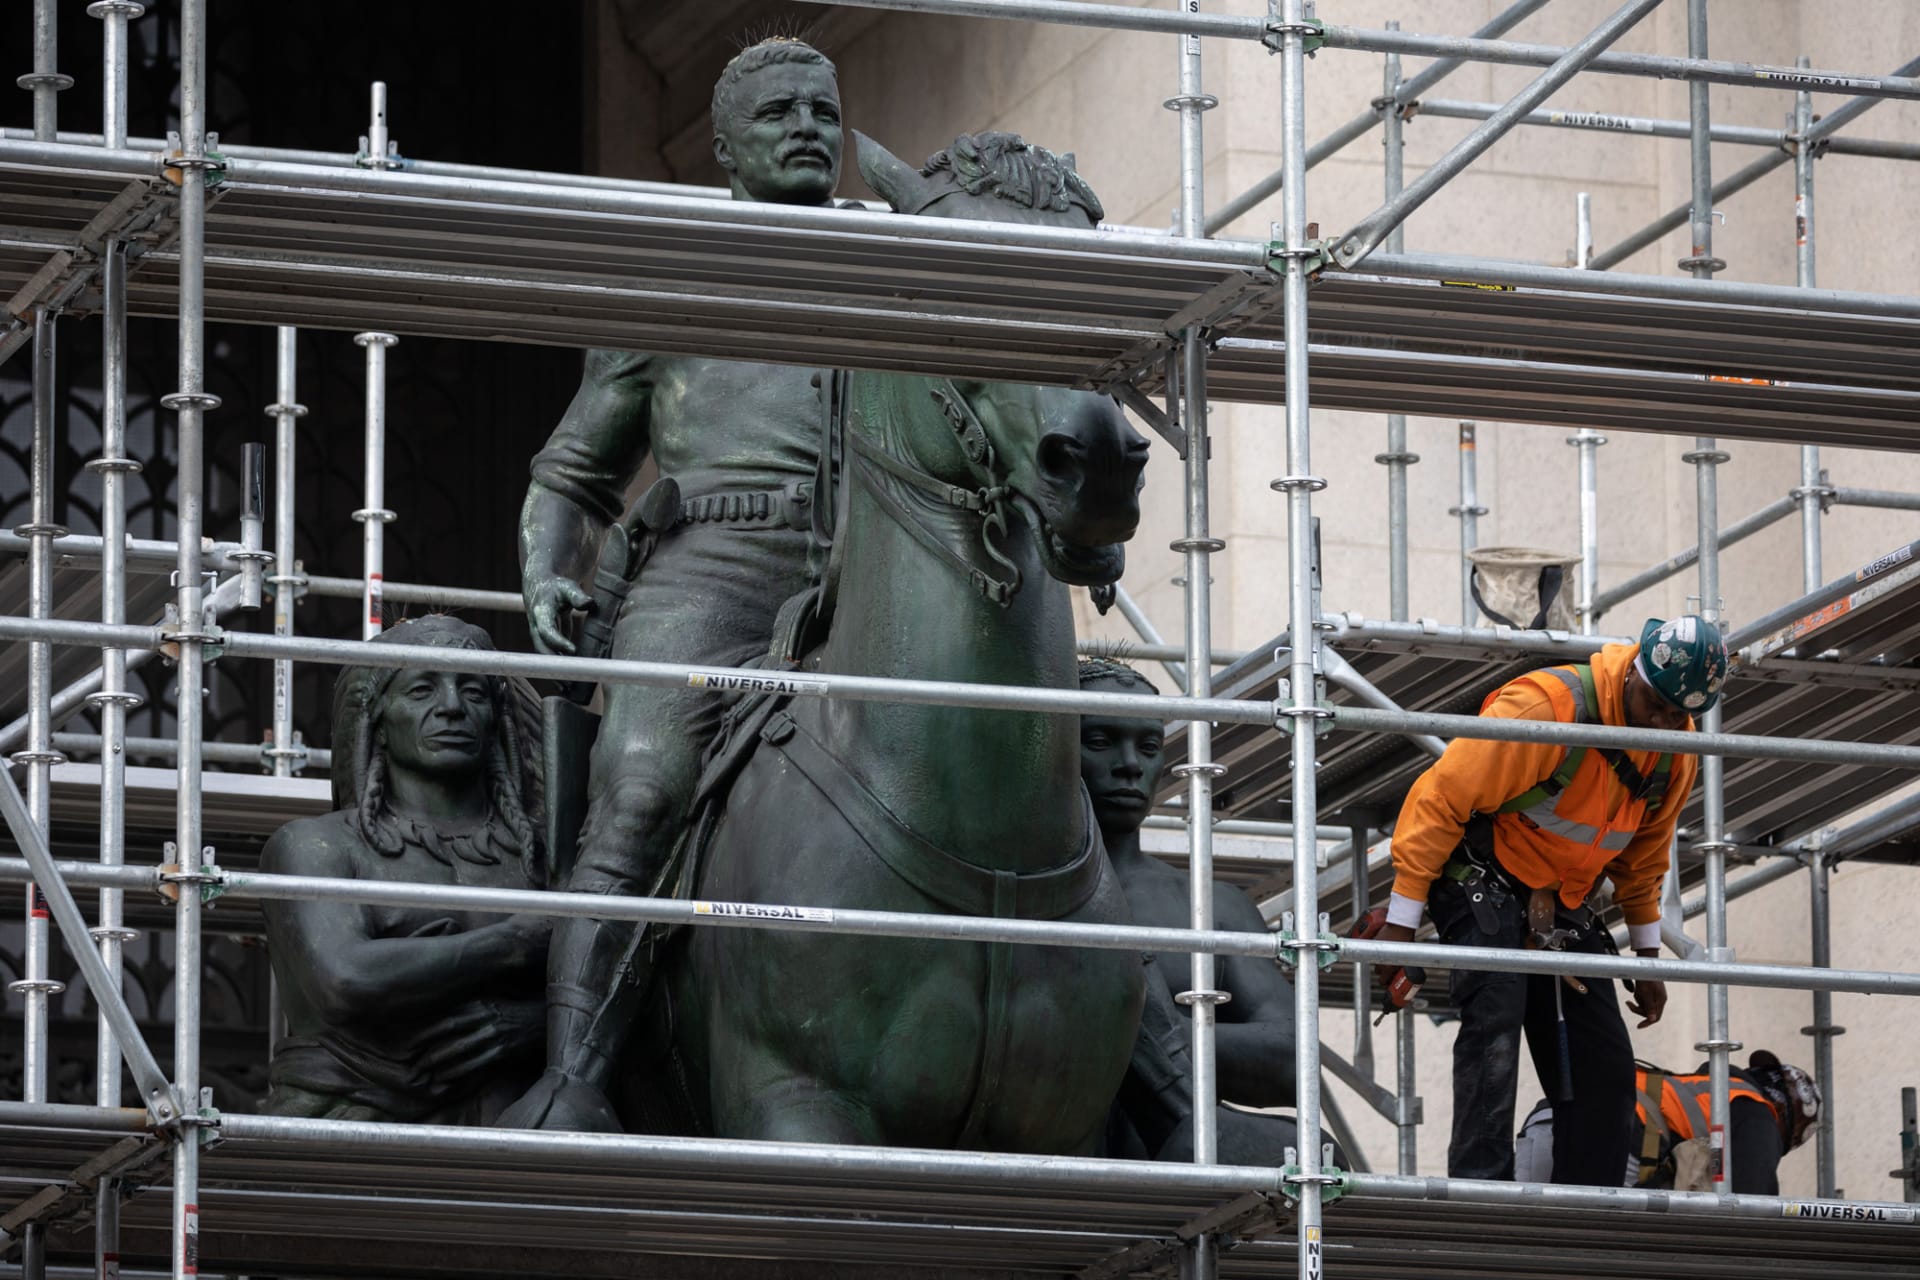 إزالة تمثال للرئيس الأمريكي ثيودور روزفلت من متحف في نيويورك لإثارته الجدل